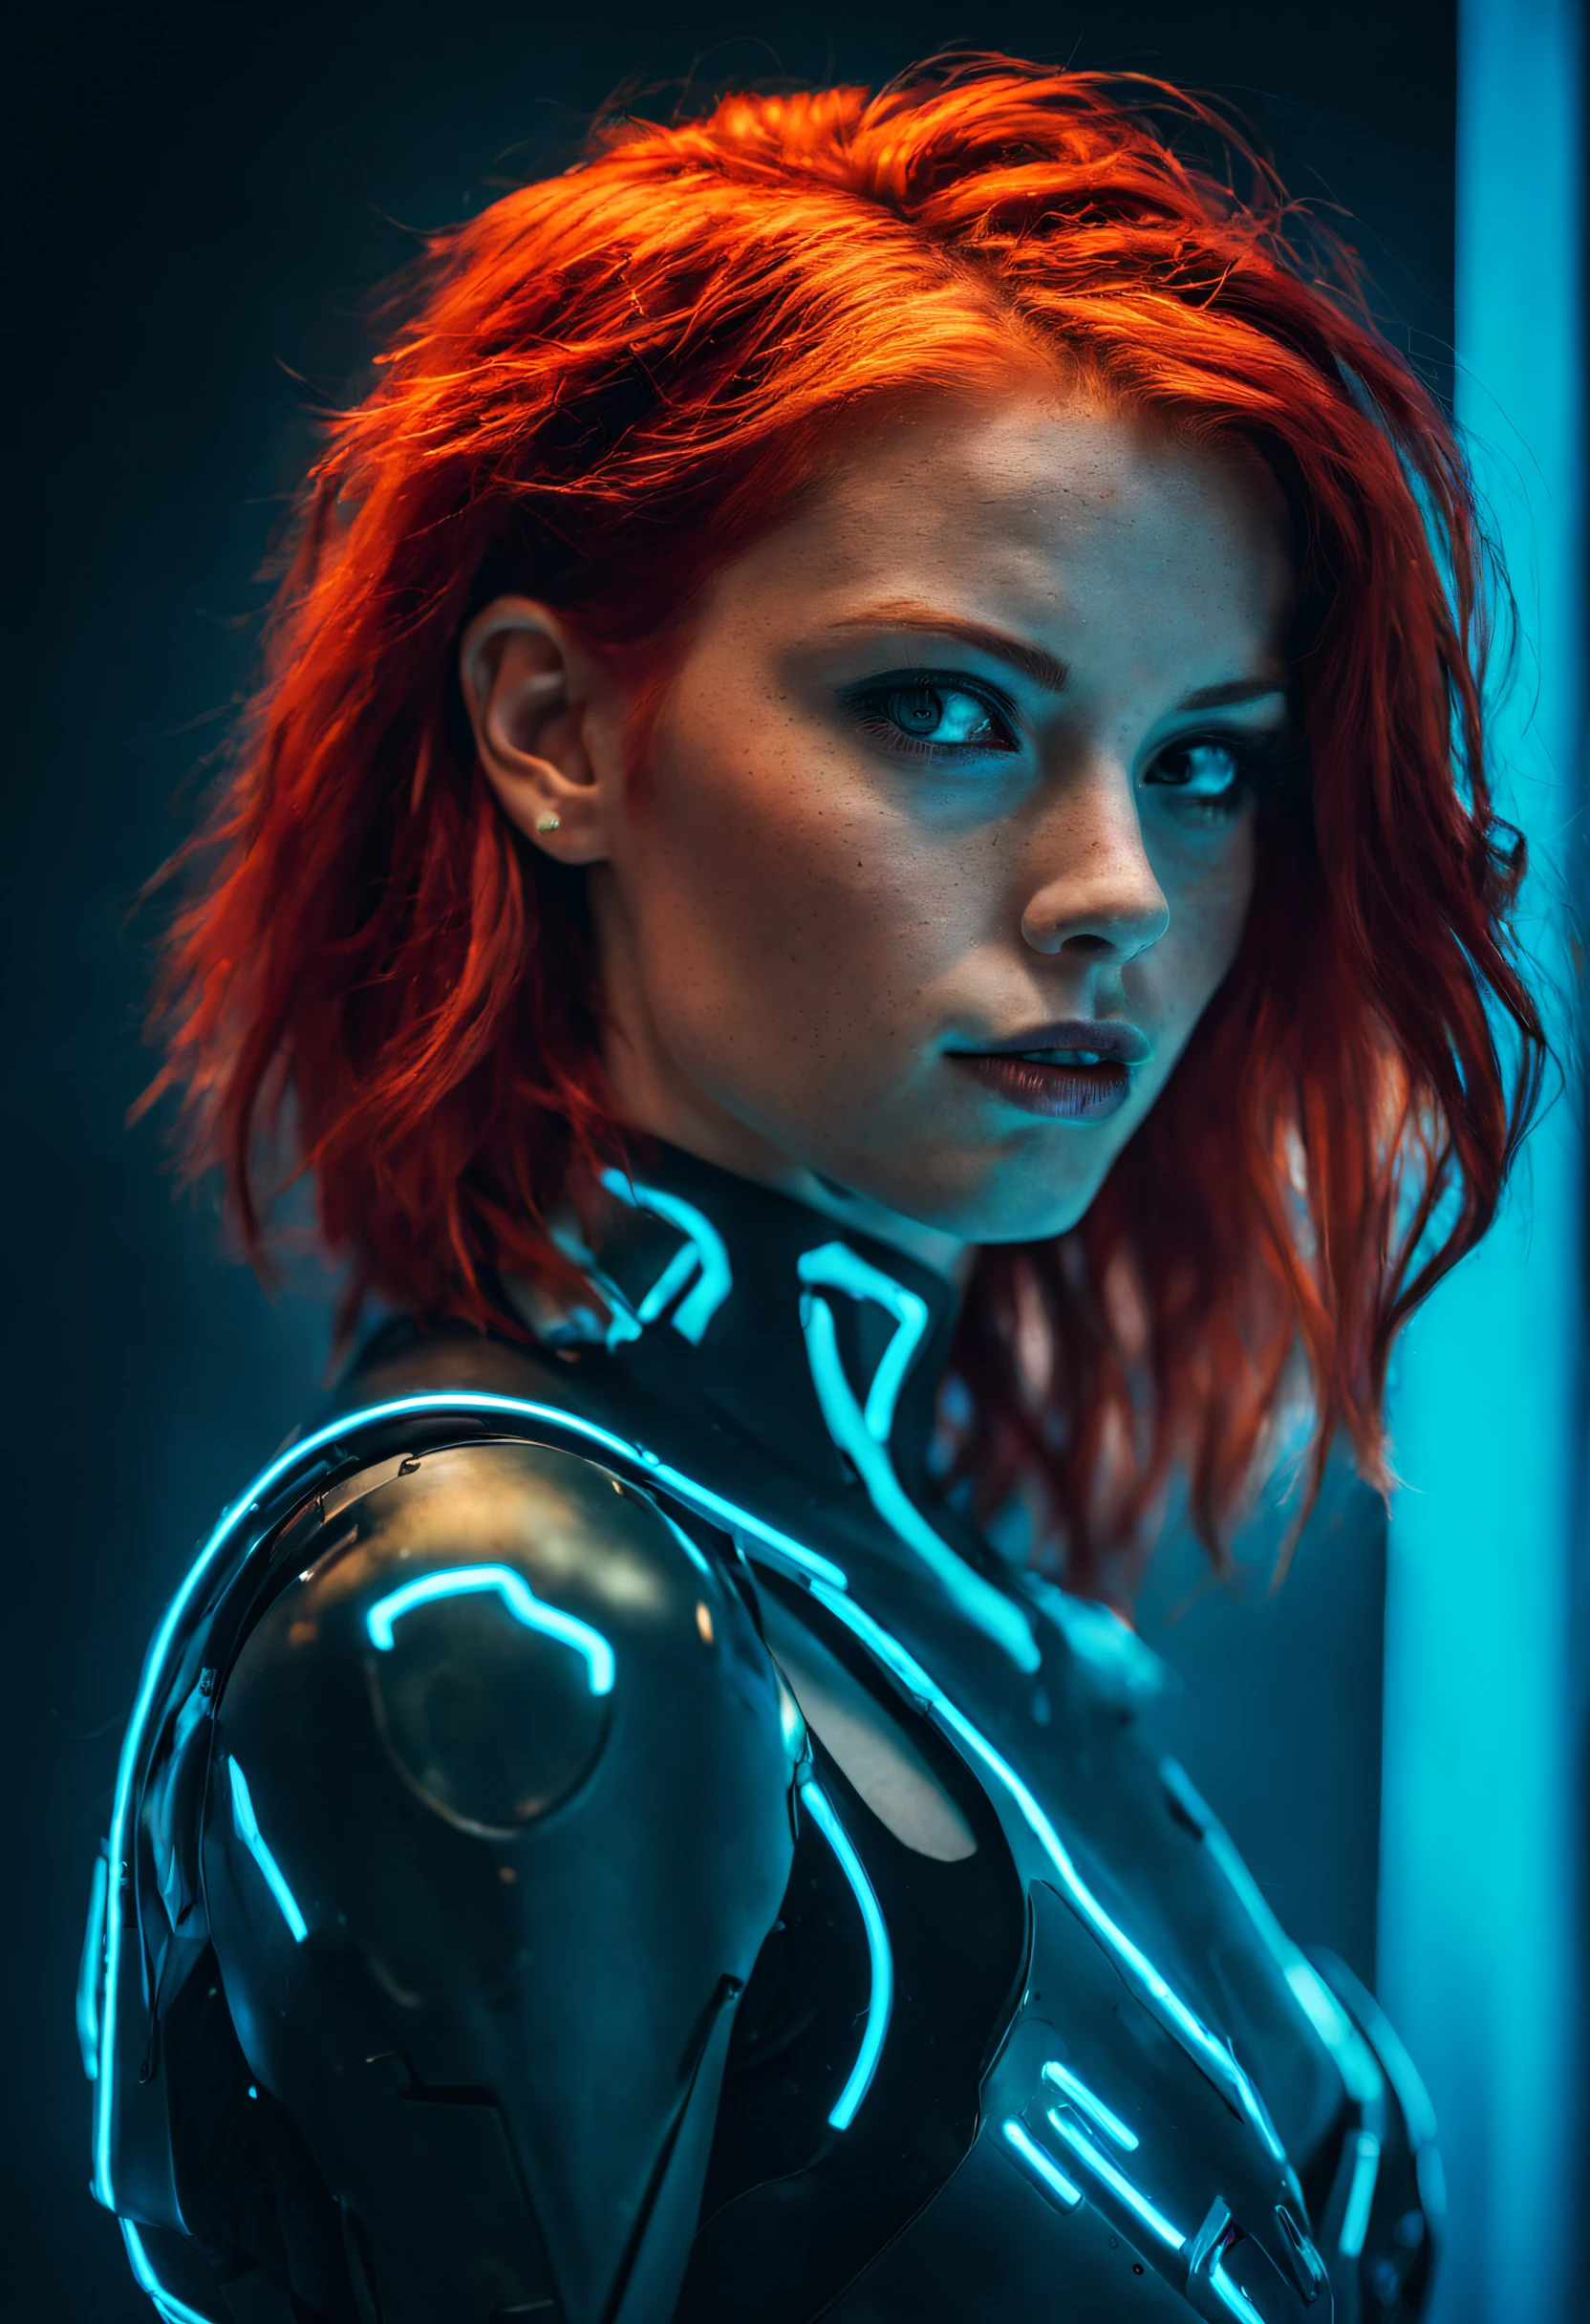 一張照片捕捉了一位火紅頭髮的年輕機器人女性的本質. 她的臉充滿了畫面, 沐浴在霓虹色彩中, 在未來主義的背景下散發著決心和神秘感., 不明確的